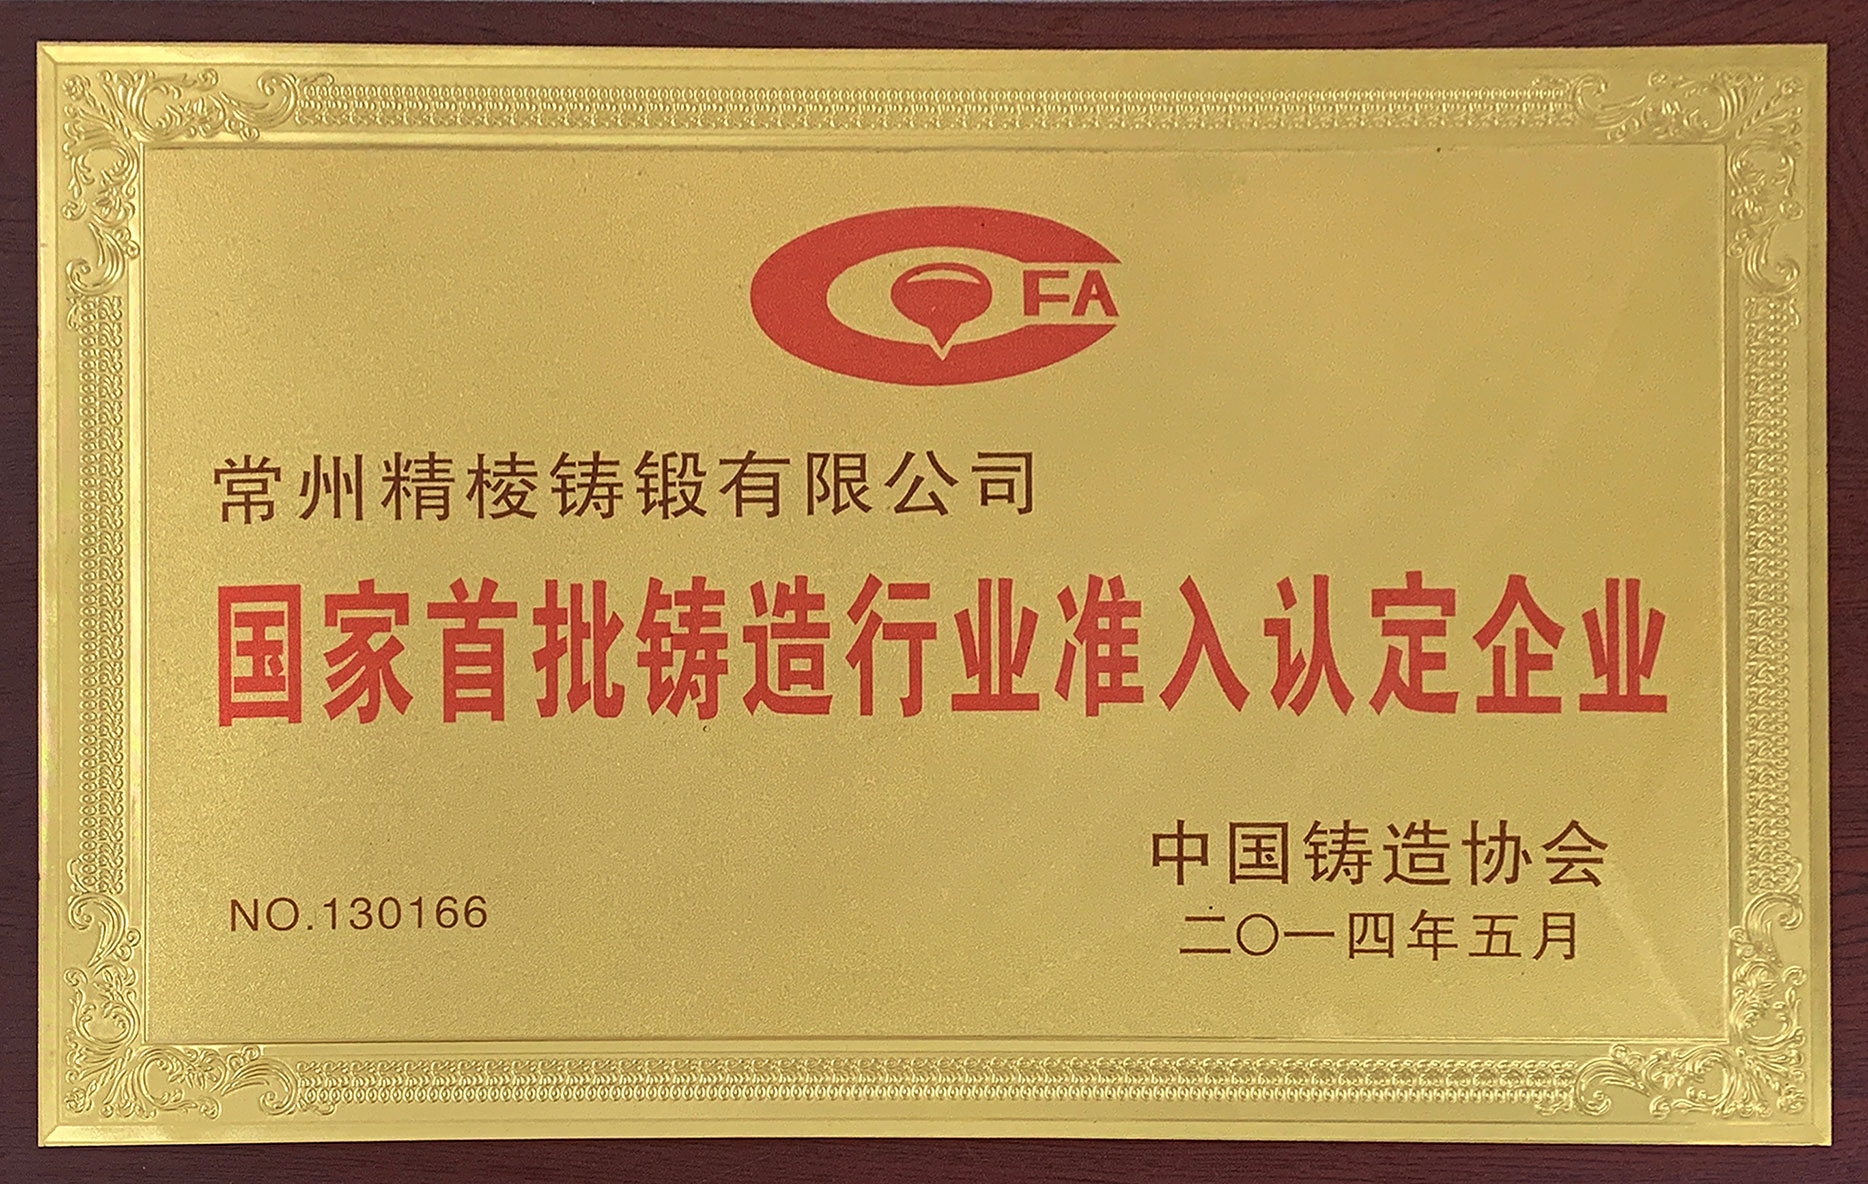 中国首批铸造行业准入认定企业